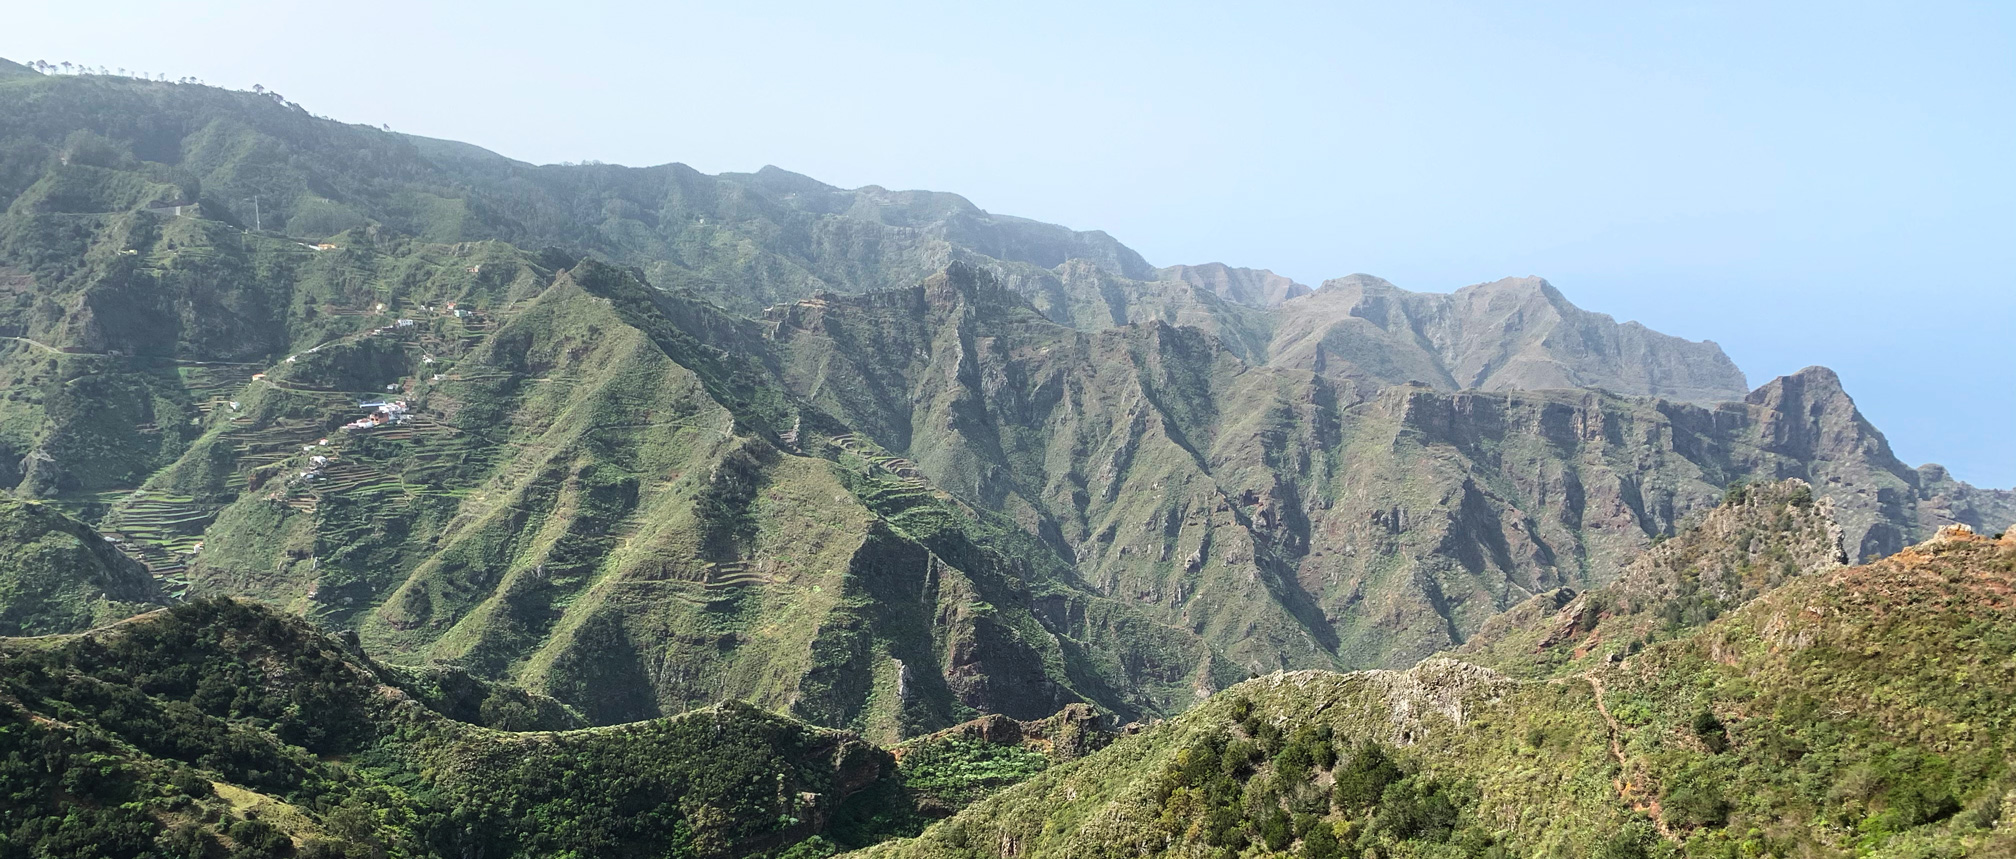 Illas Canarias, Tenerife: Parque Rural de Anaga. Sendeiro dos sentidos. Ruteiro circular de Las Carboneras - Chinamada